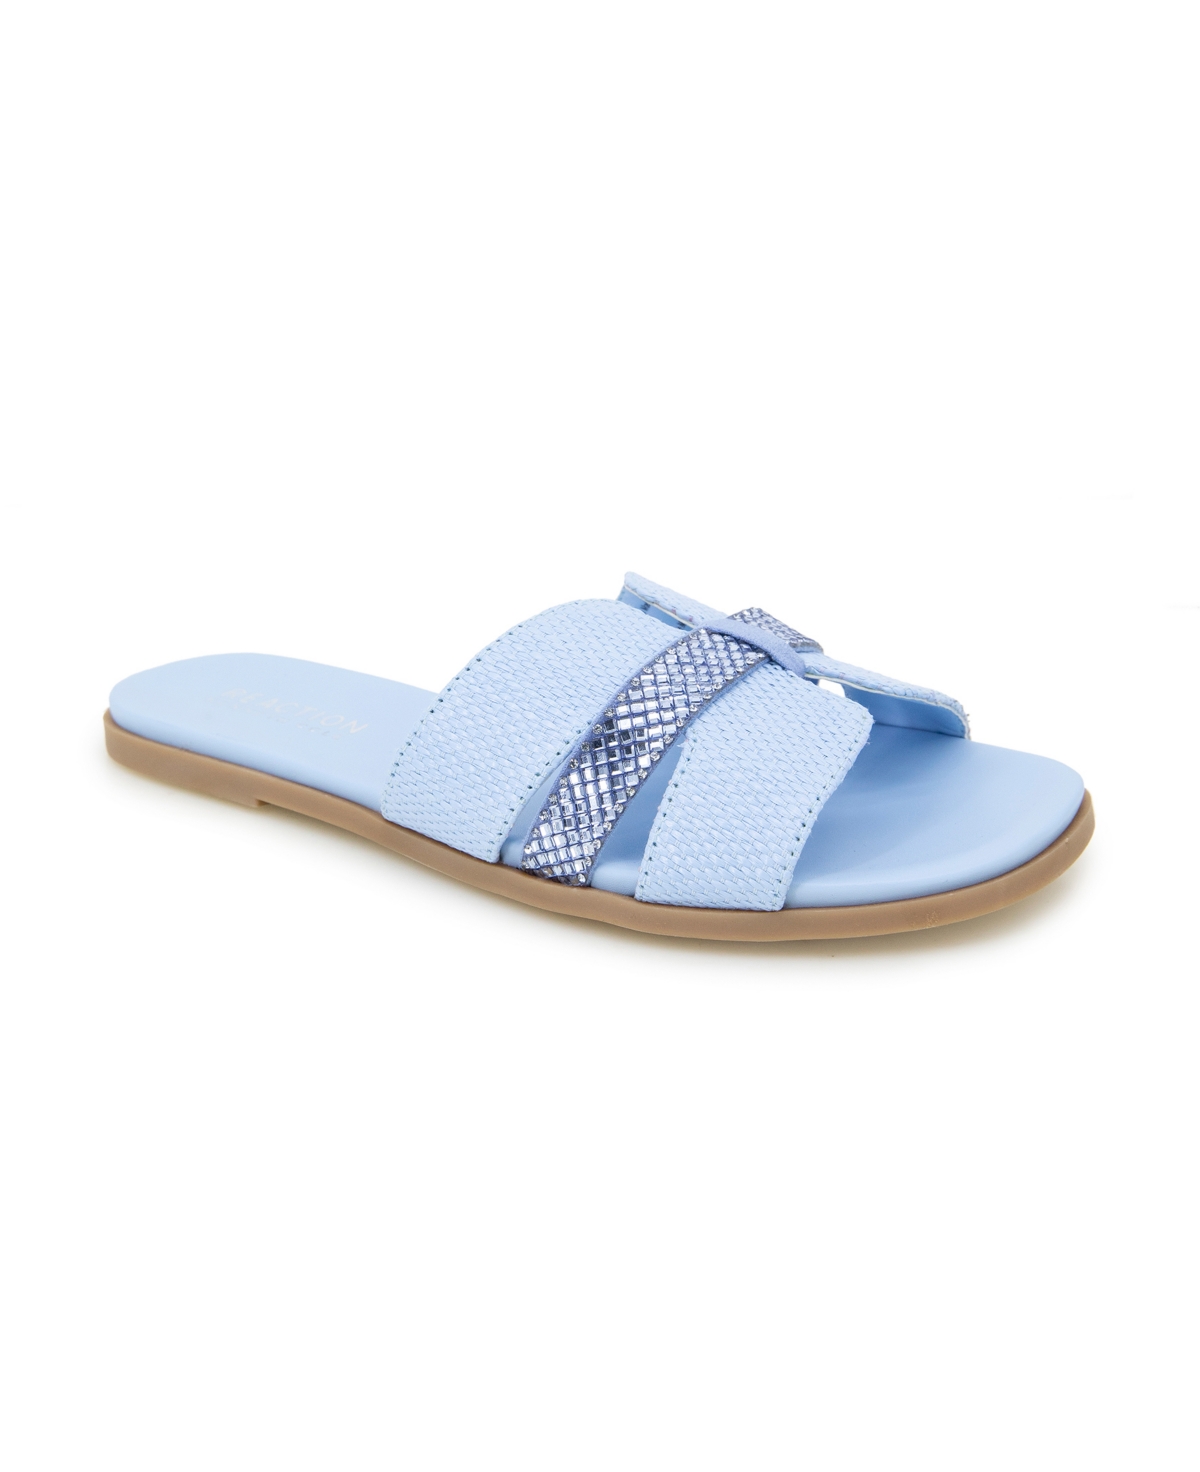 Women's Whisp Sandals - Sky Blue Weave